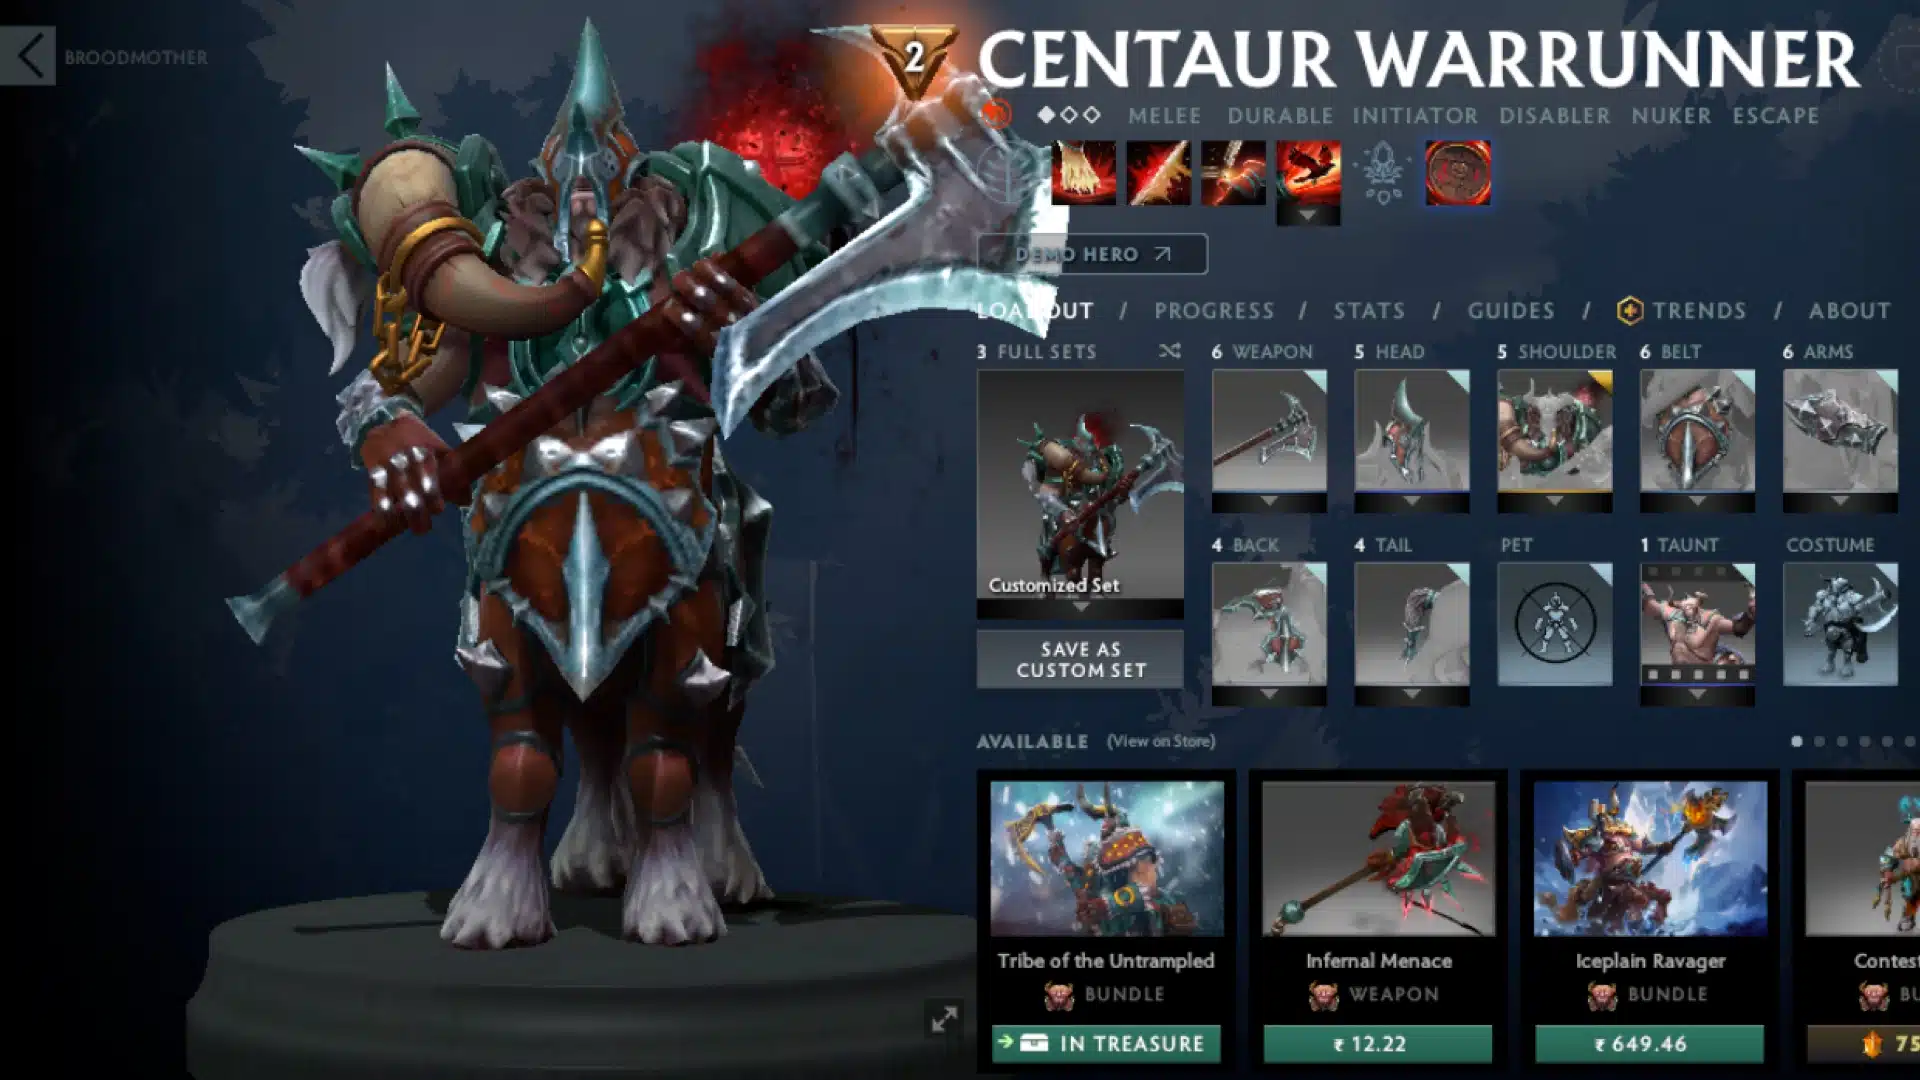 Centaur Warrunner